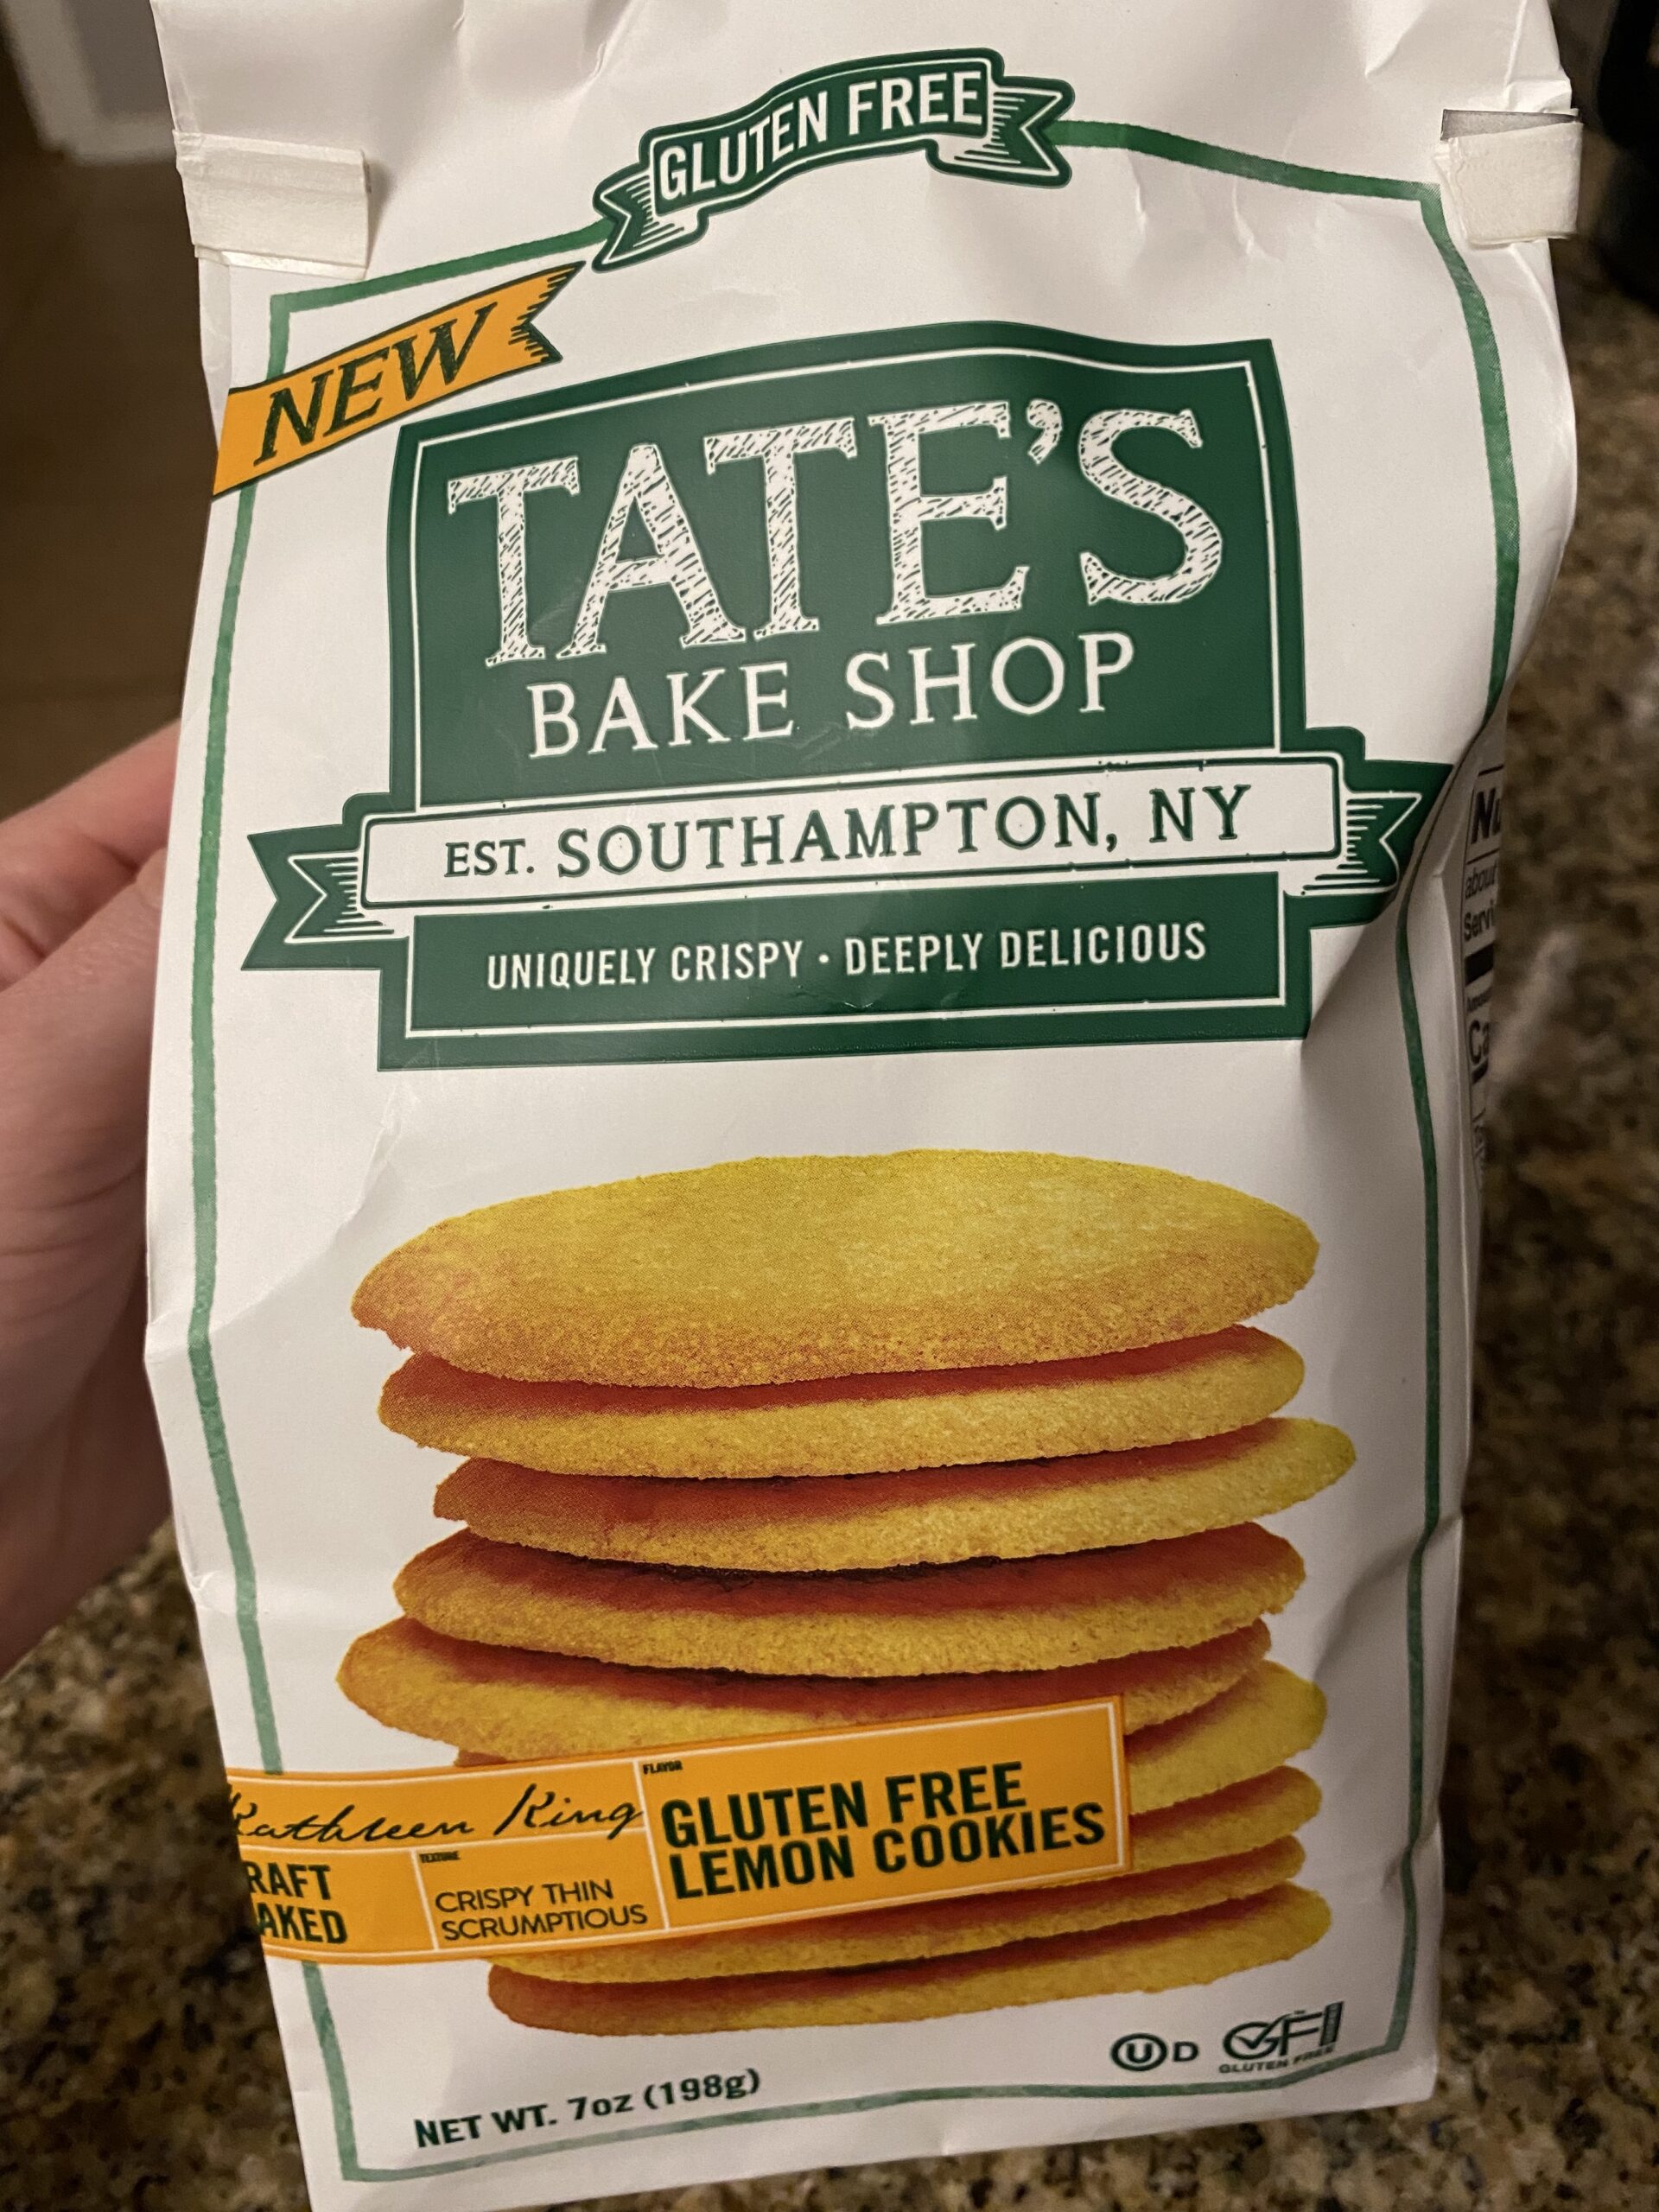 Tate’s Bake Shop Gluten Free Lemon Cookies